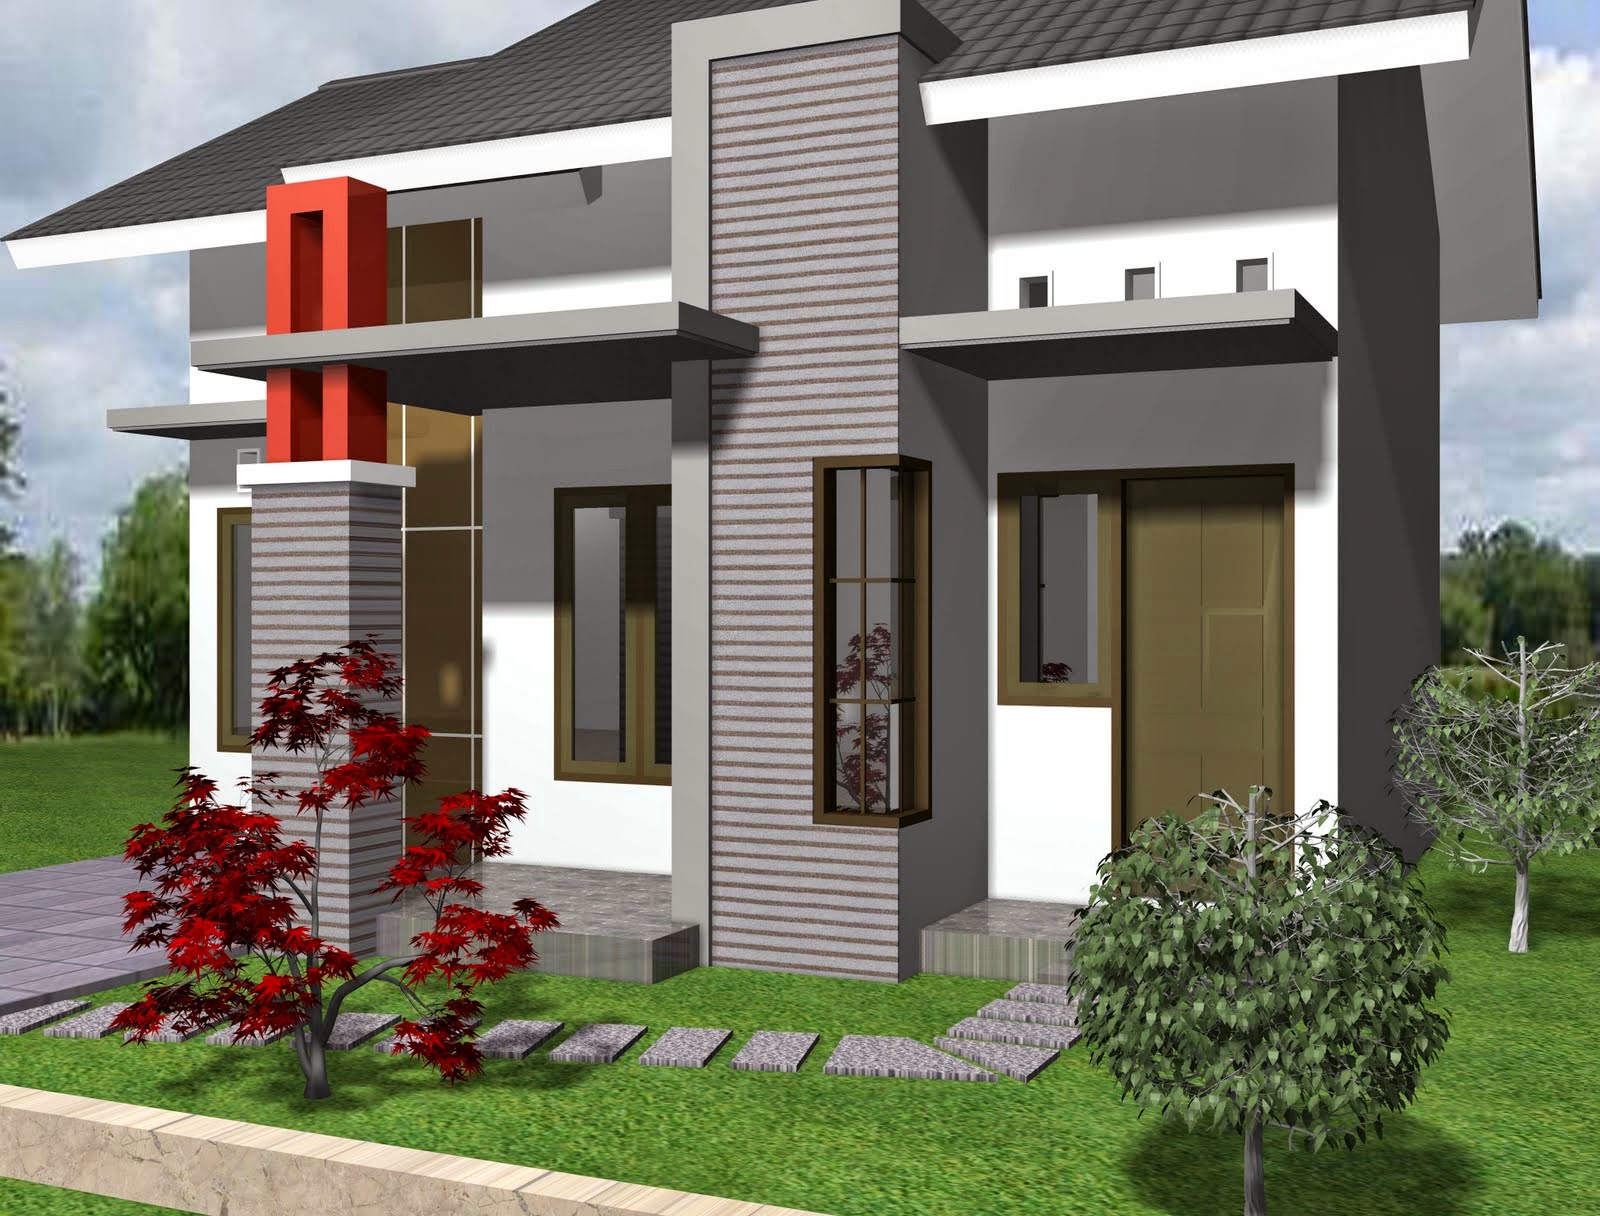 62 Desain Rumah Minimalis Ramah Lingkungan | Desain Rumah ...